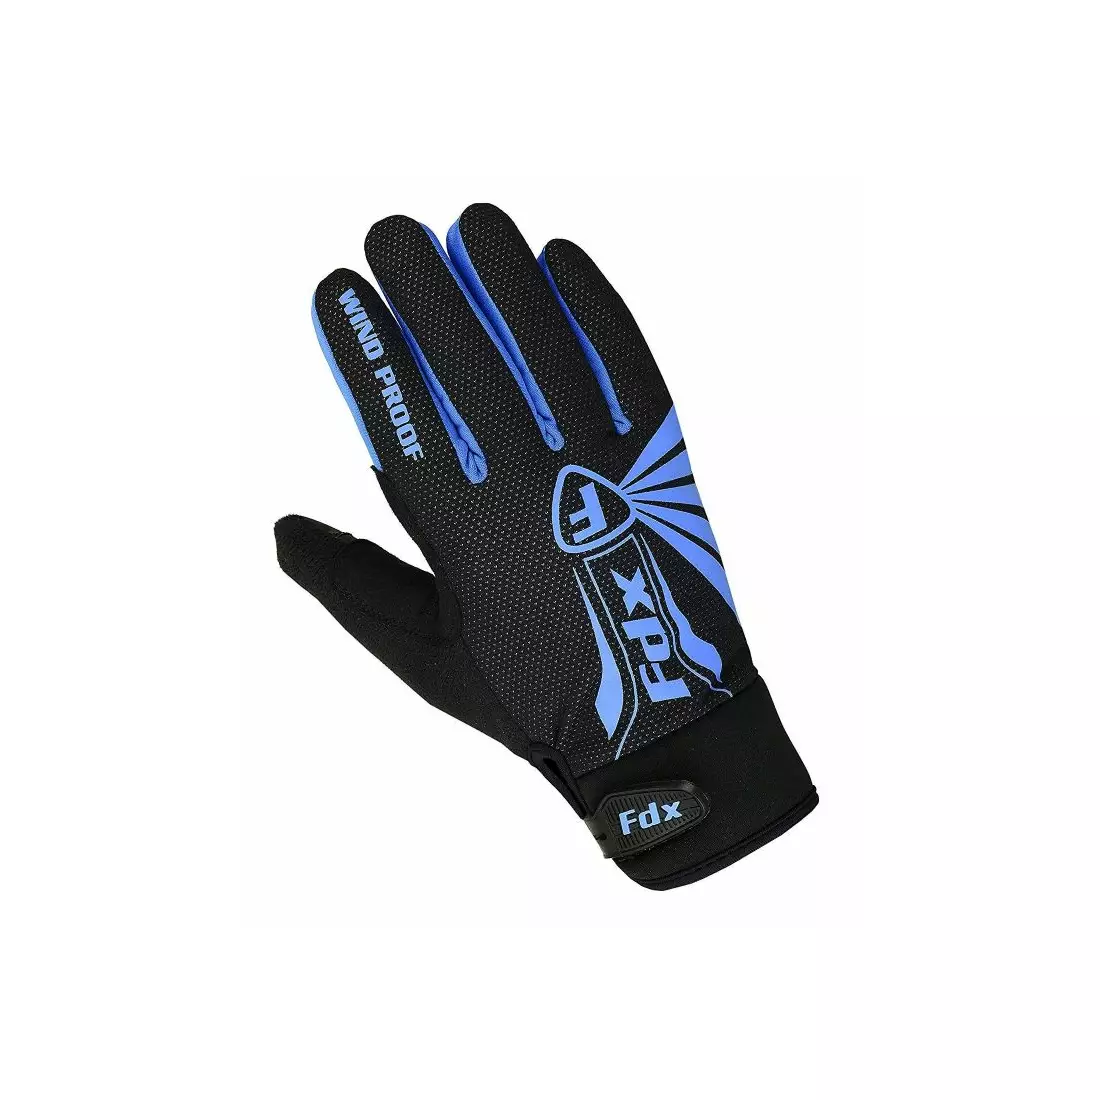 FDX 1901 Full Finger zimní cyklistické rukavice Černá a modrá